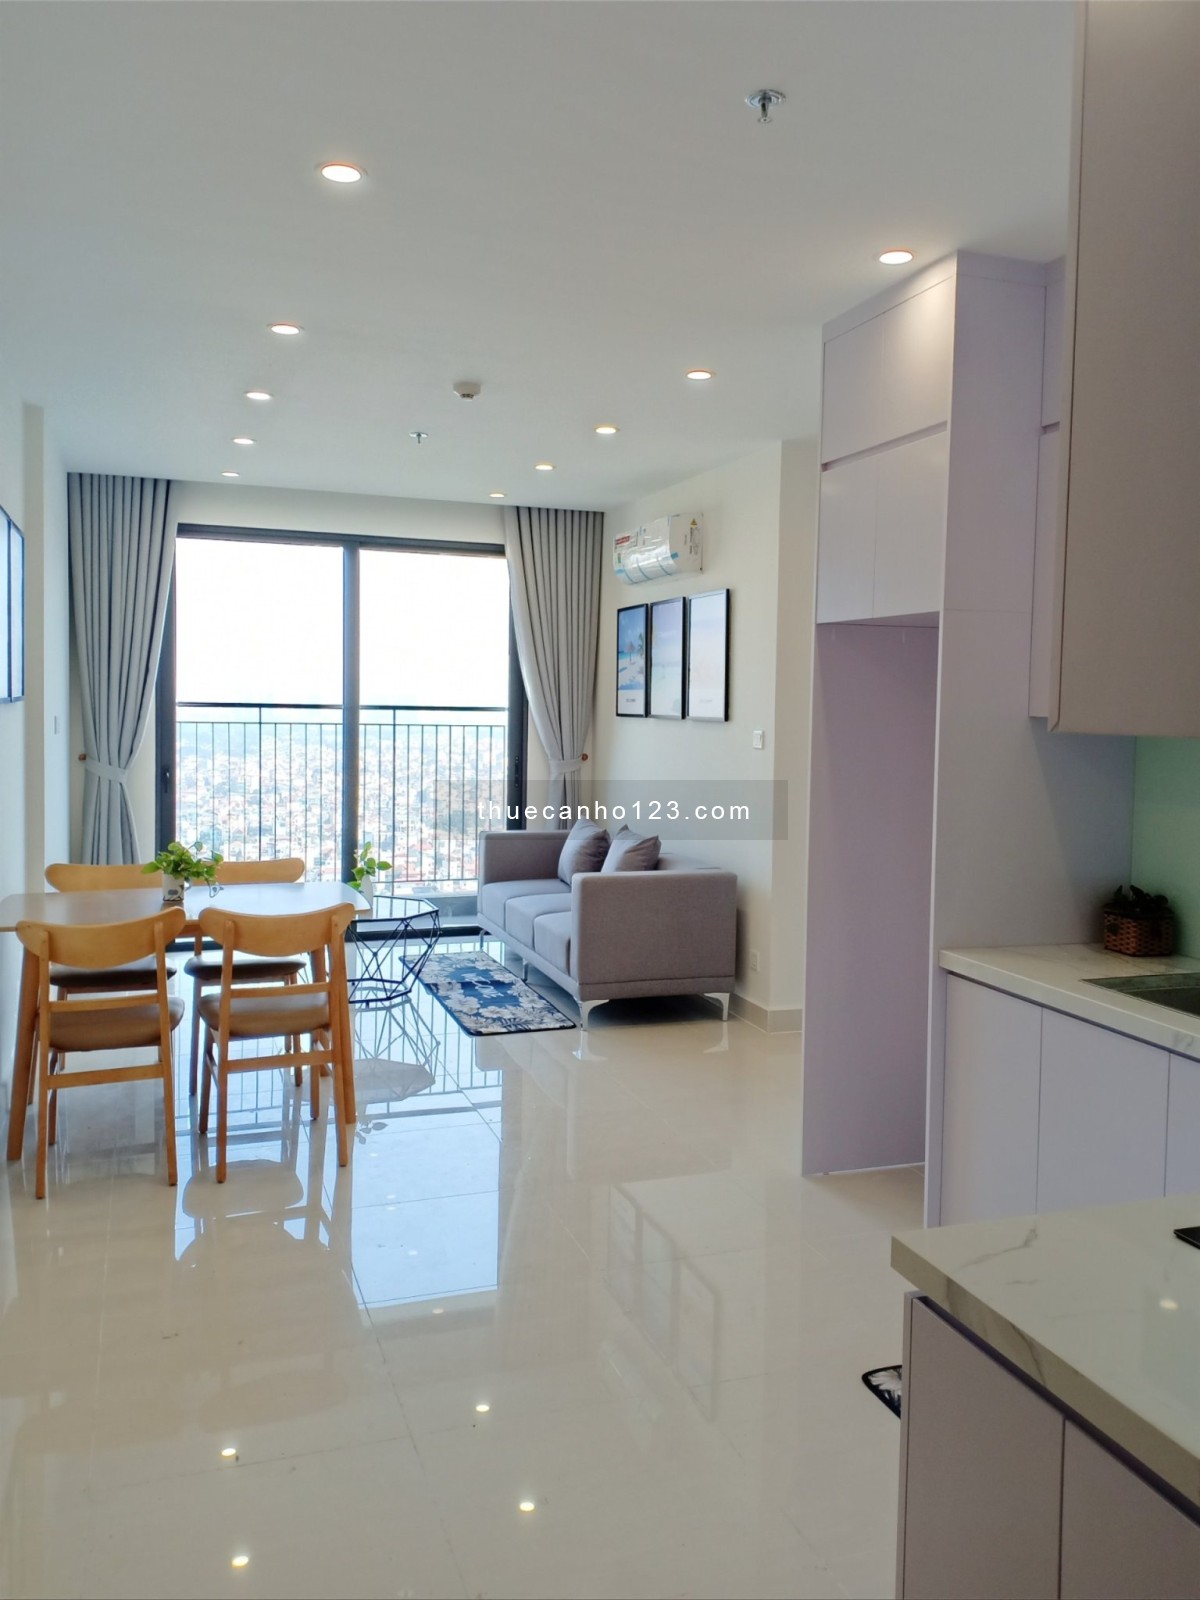 Thuê căn hộ 2 phòng ngủ Full nội thất A-Z chỉ 9.5tr/tháng. Vinhomes Smart City